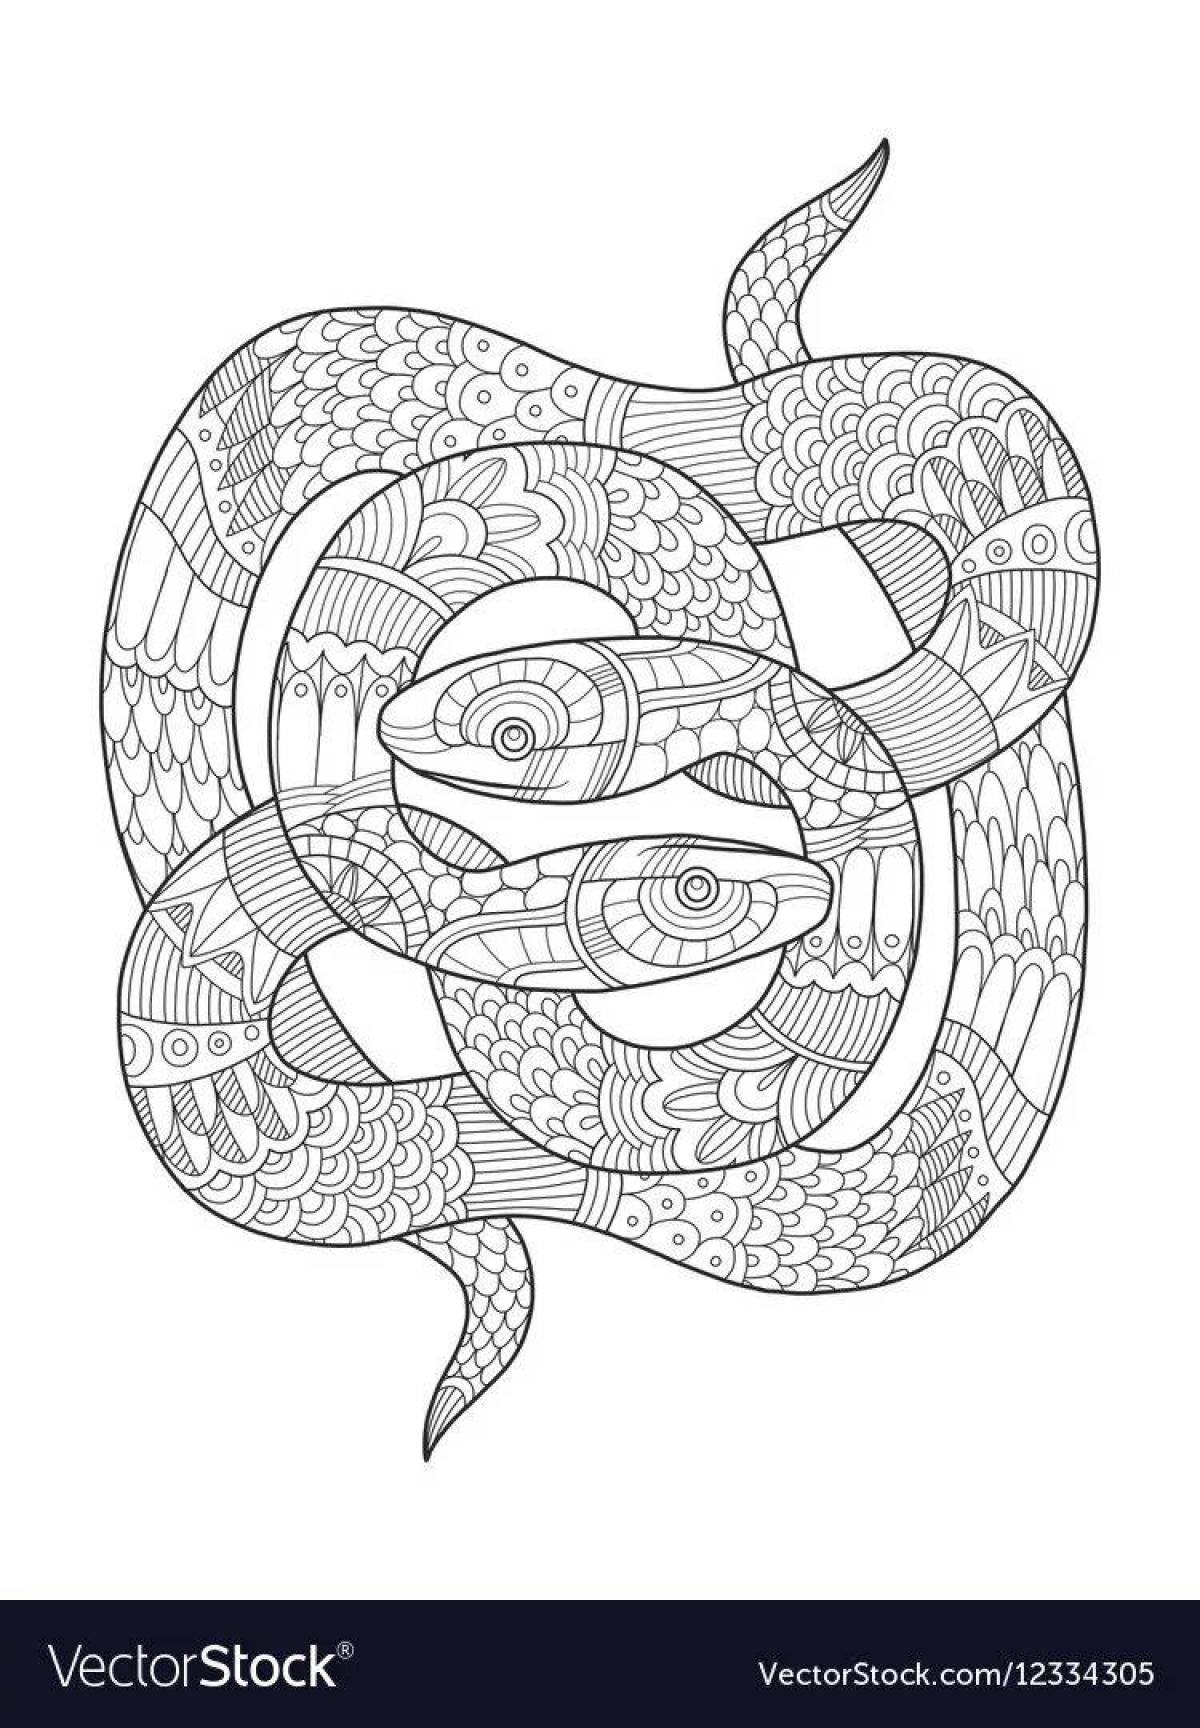 Змея антистресс #16